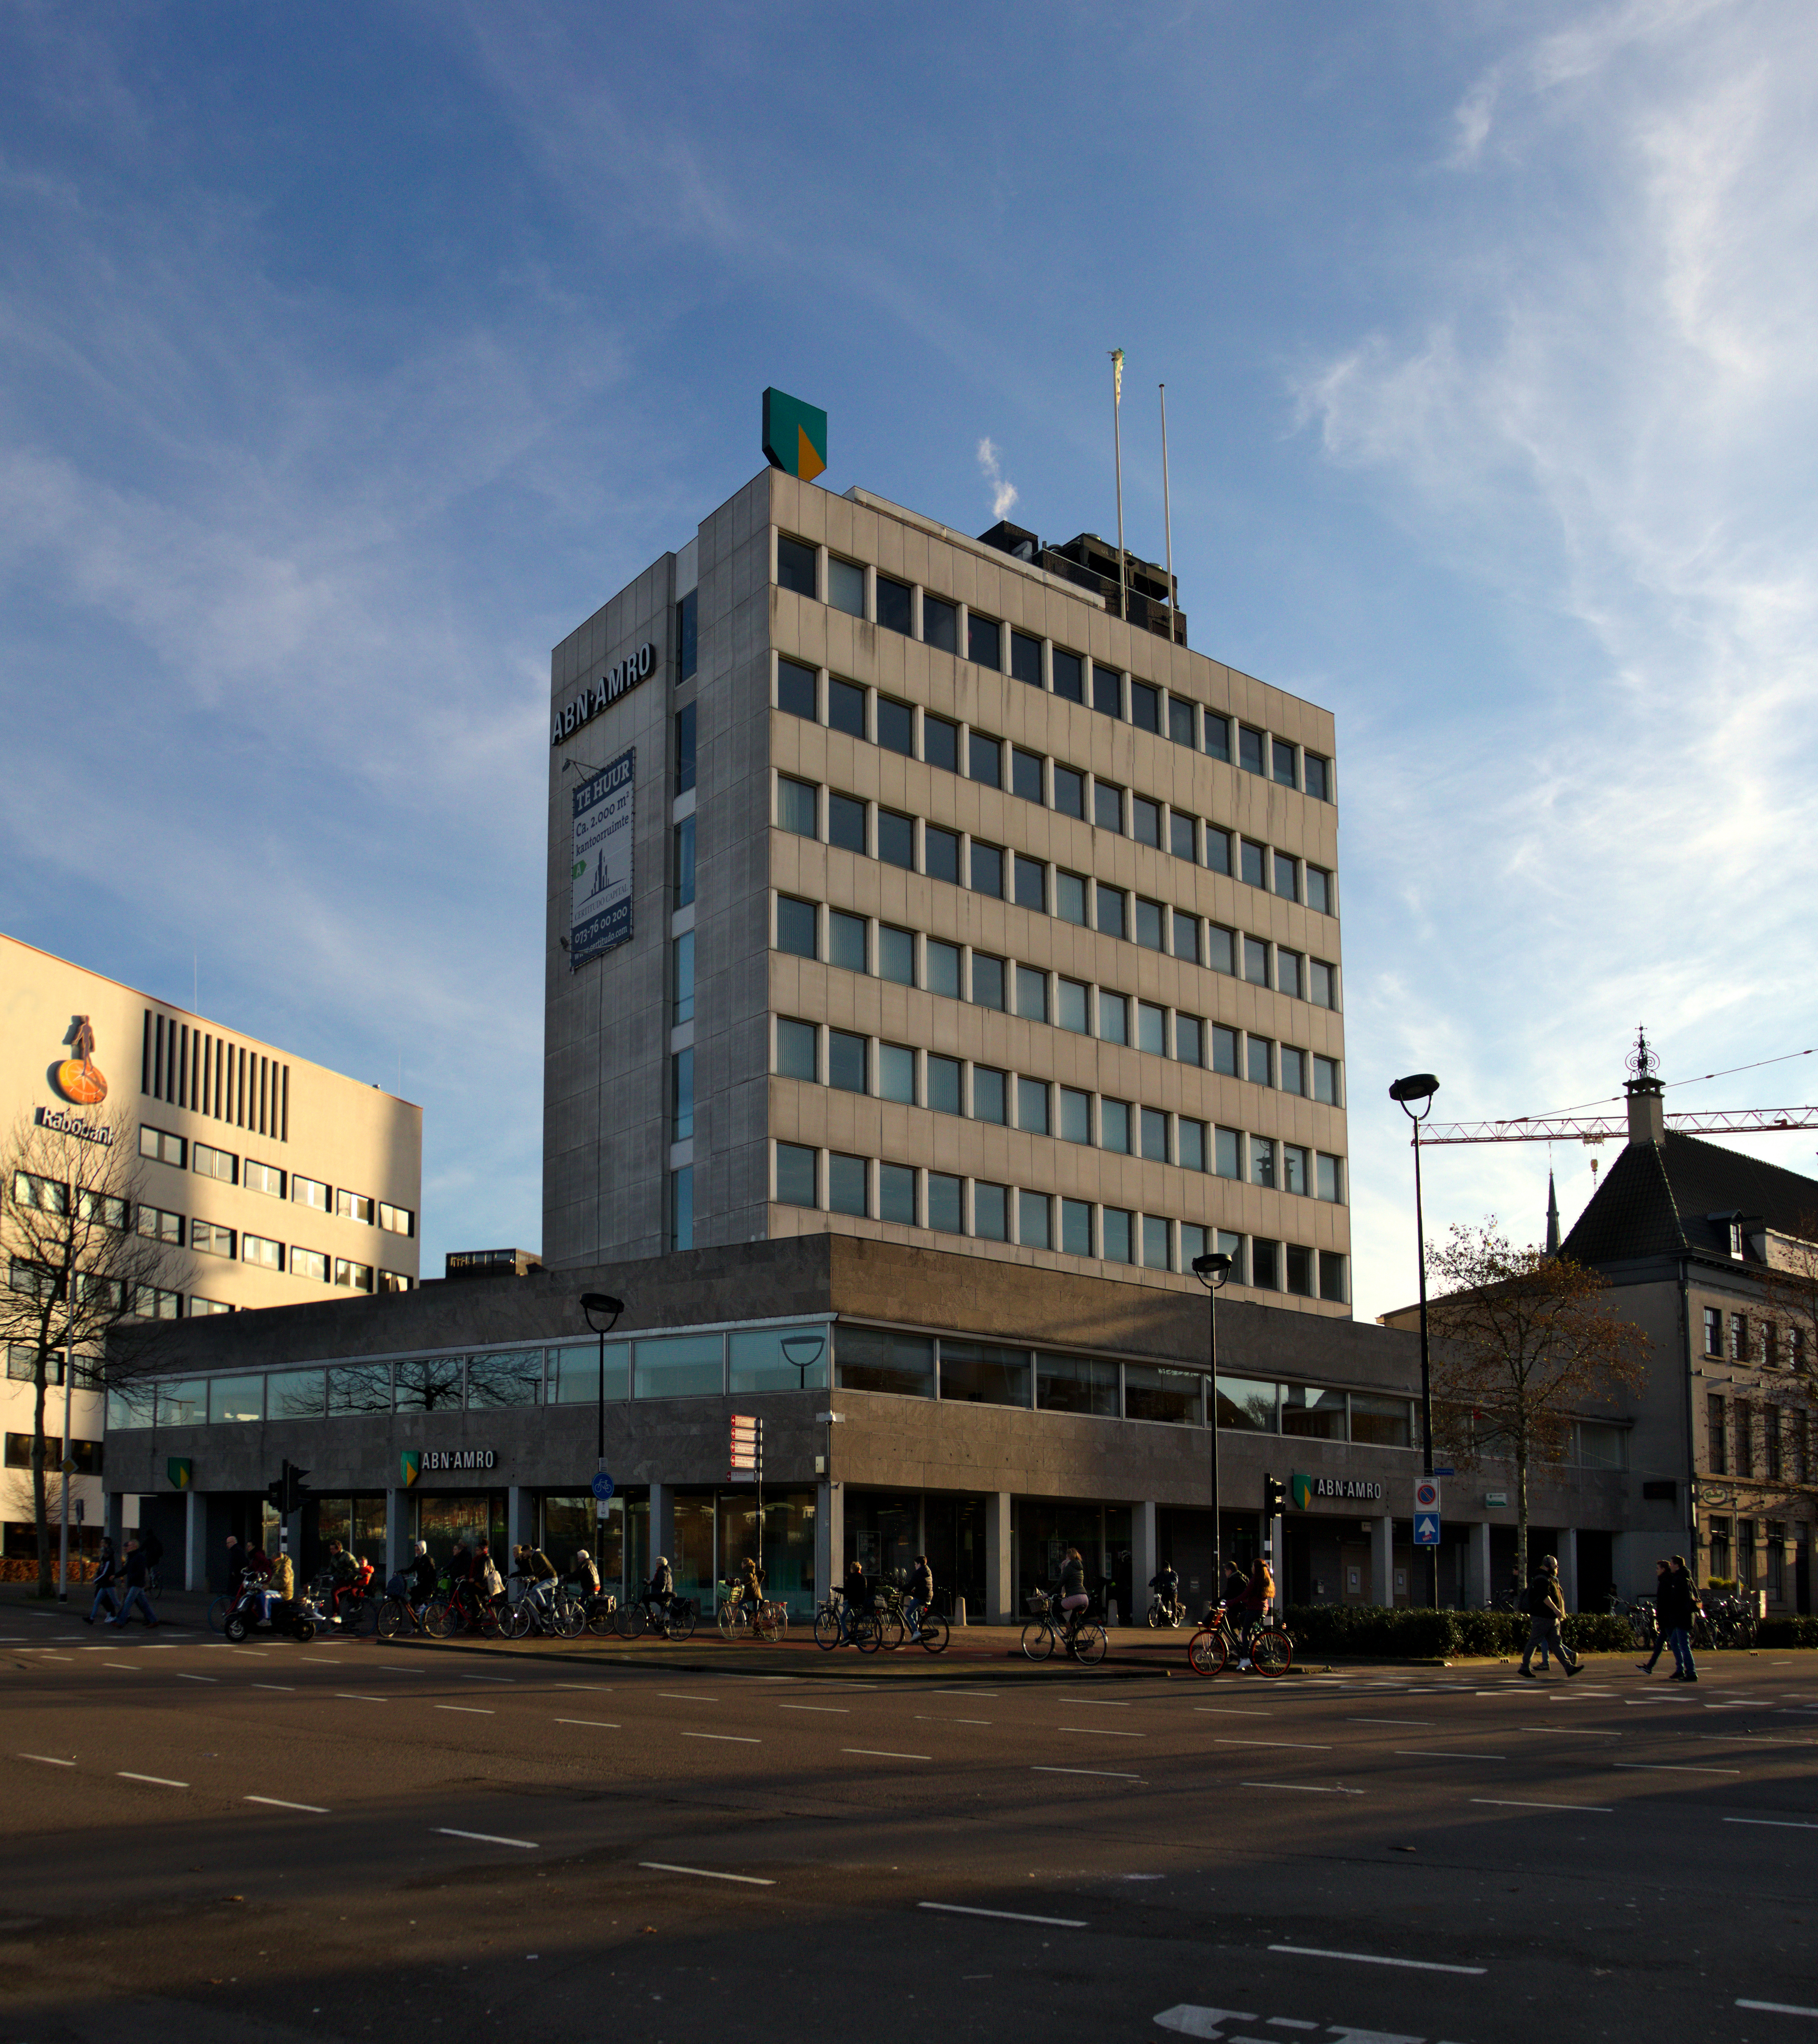 Weggelaten Nageslacht pion File:Tilburg - Kantoor Amrobank.jpg - Wikimedia Commons